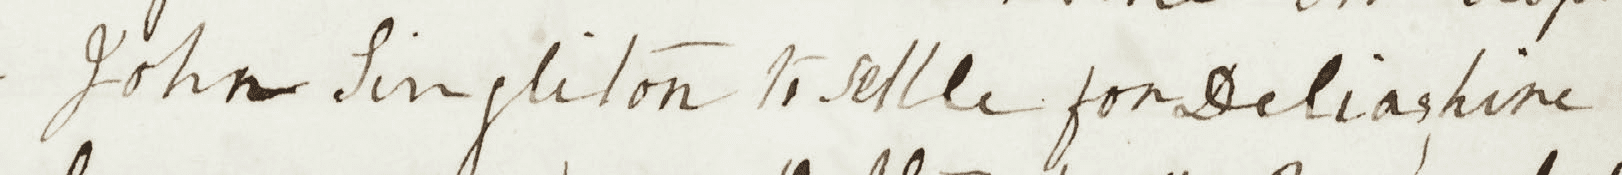 John Singleton to settle for Delia’s hire 11 April 1864